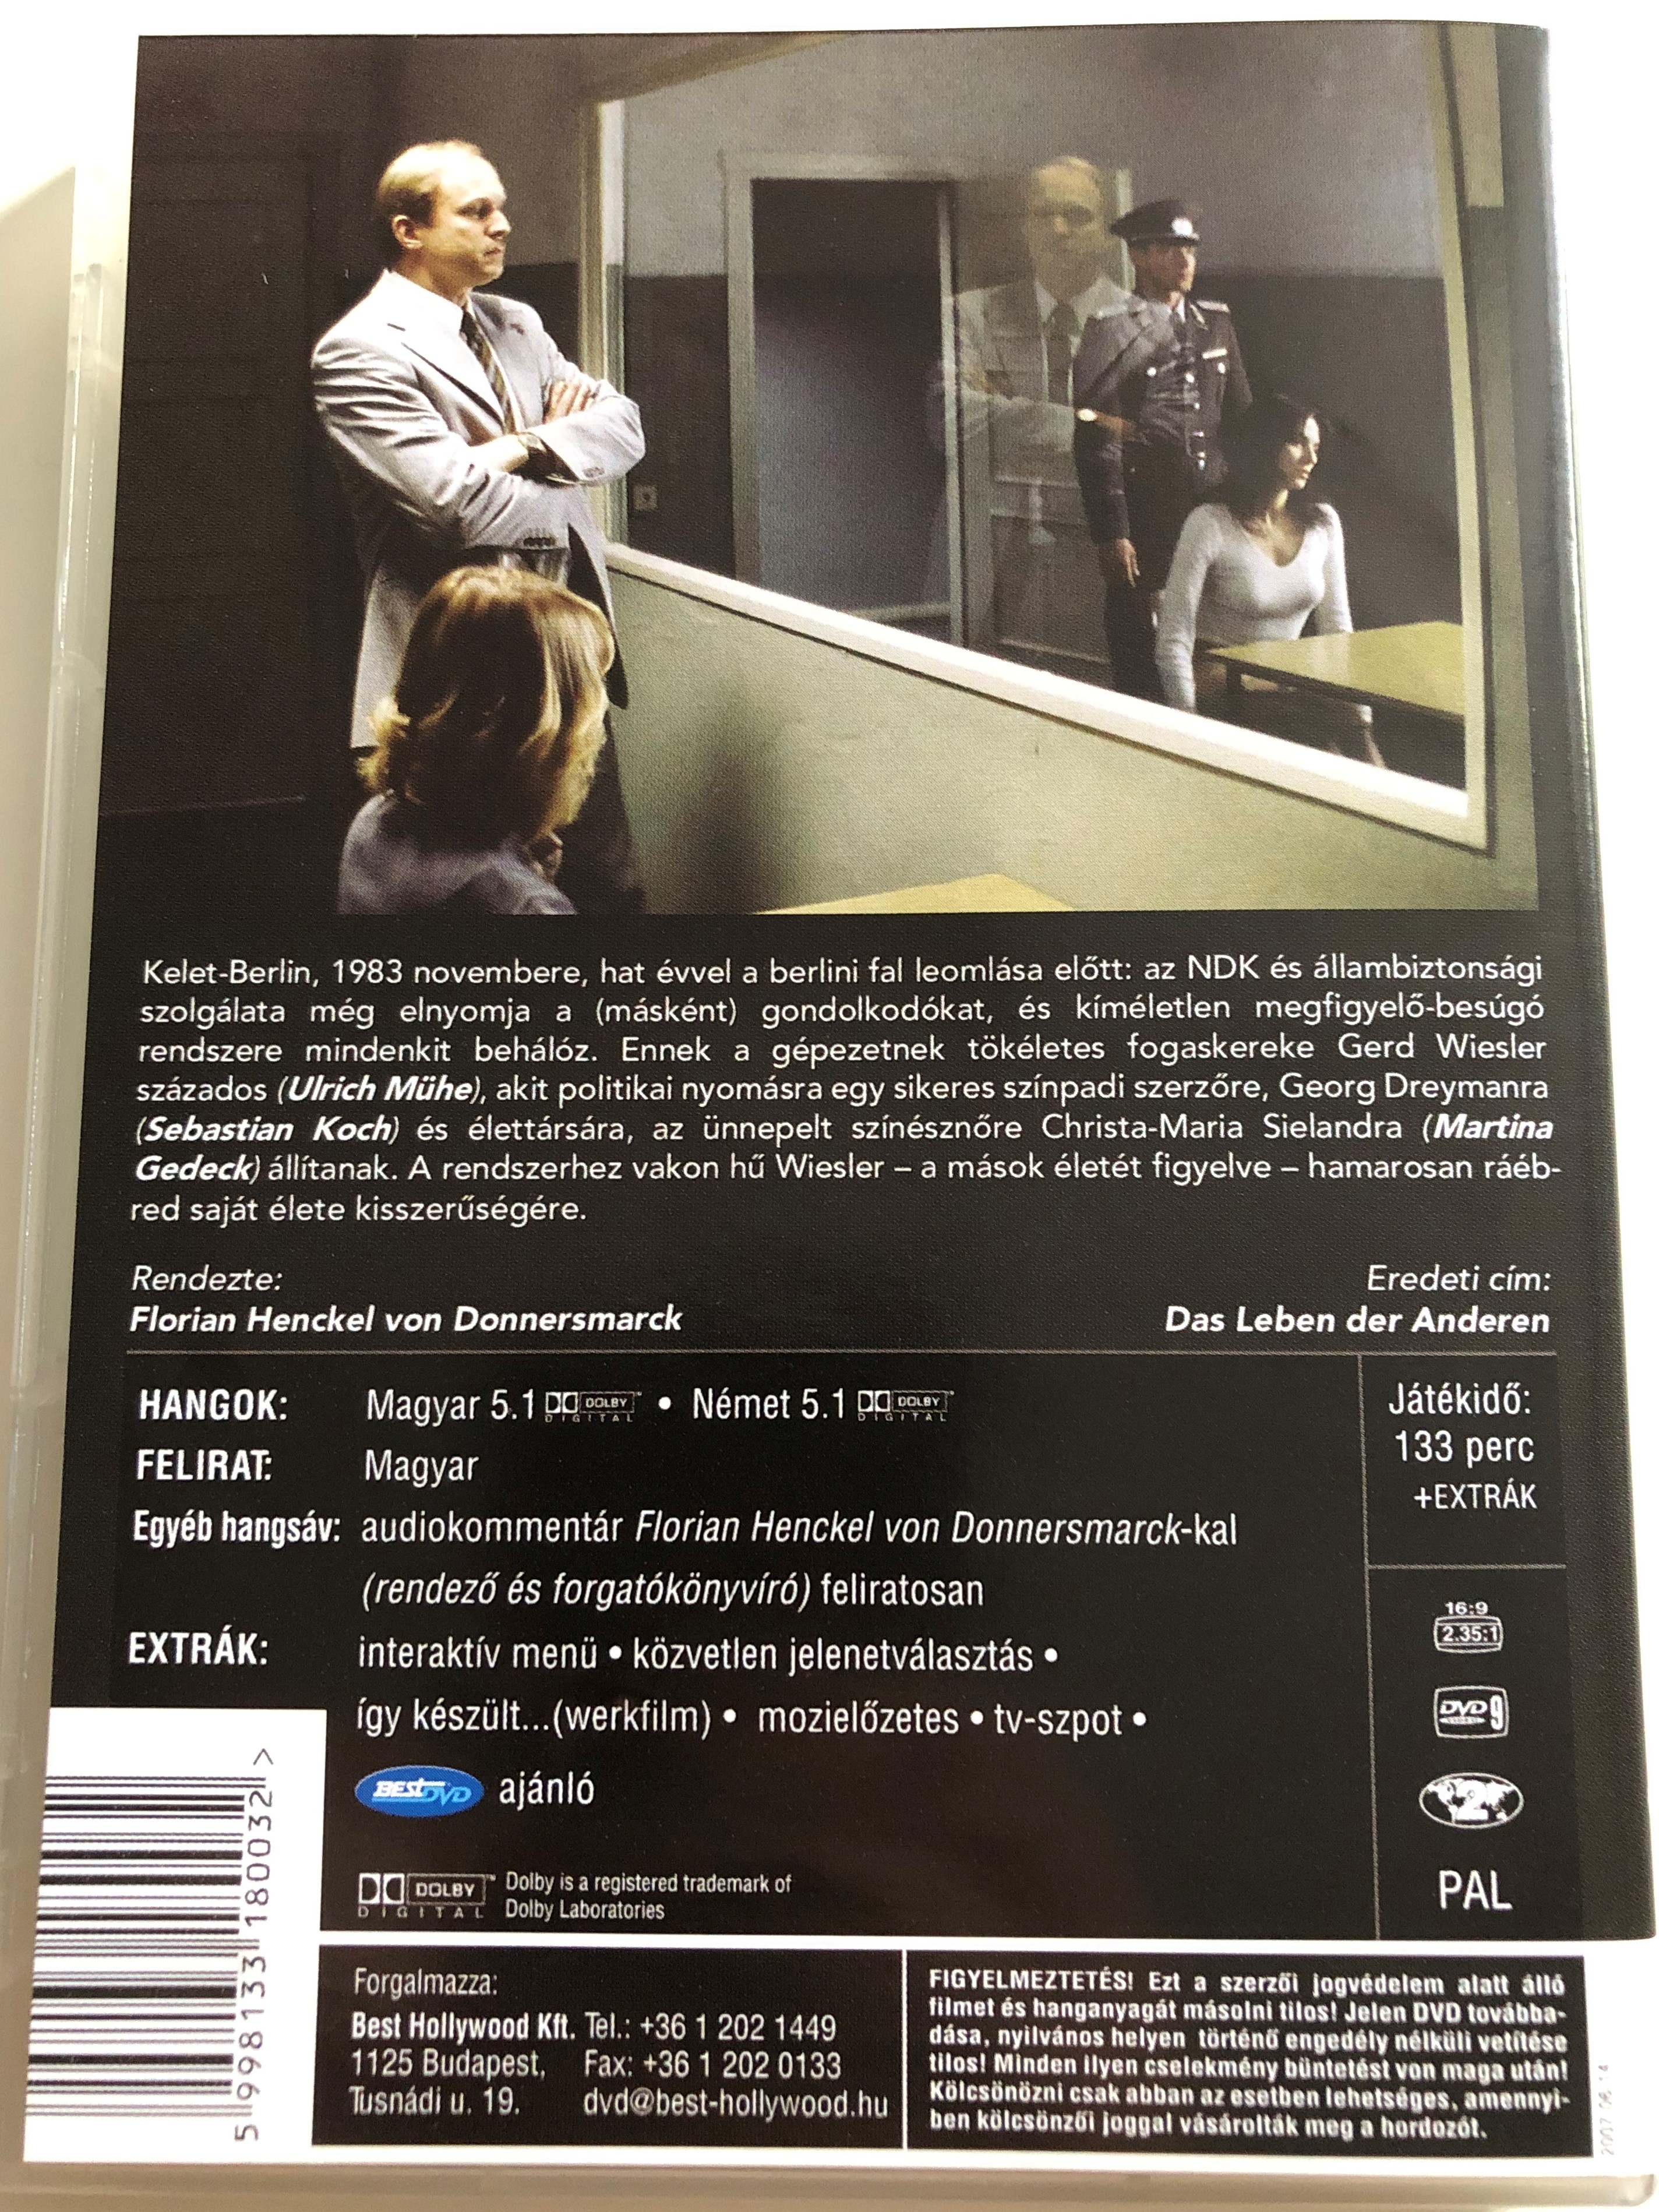 Das leben der Anderen DVD 2006 A mások élete (The lives of others) /  Directed by Florian Henckel von Donnersmarck / Starring: Ulrich Mühe,  Martina Gedeck , Sebastian Koch, Ulrich Tukur - bibleinmylanguage